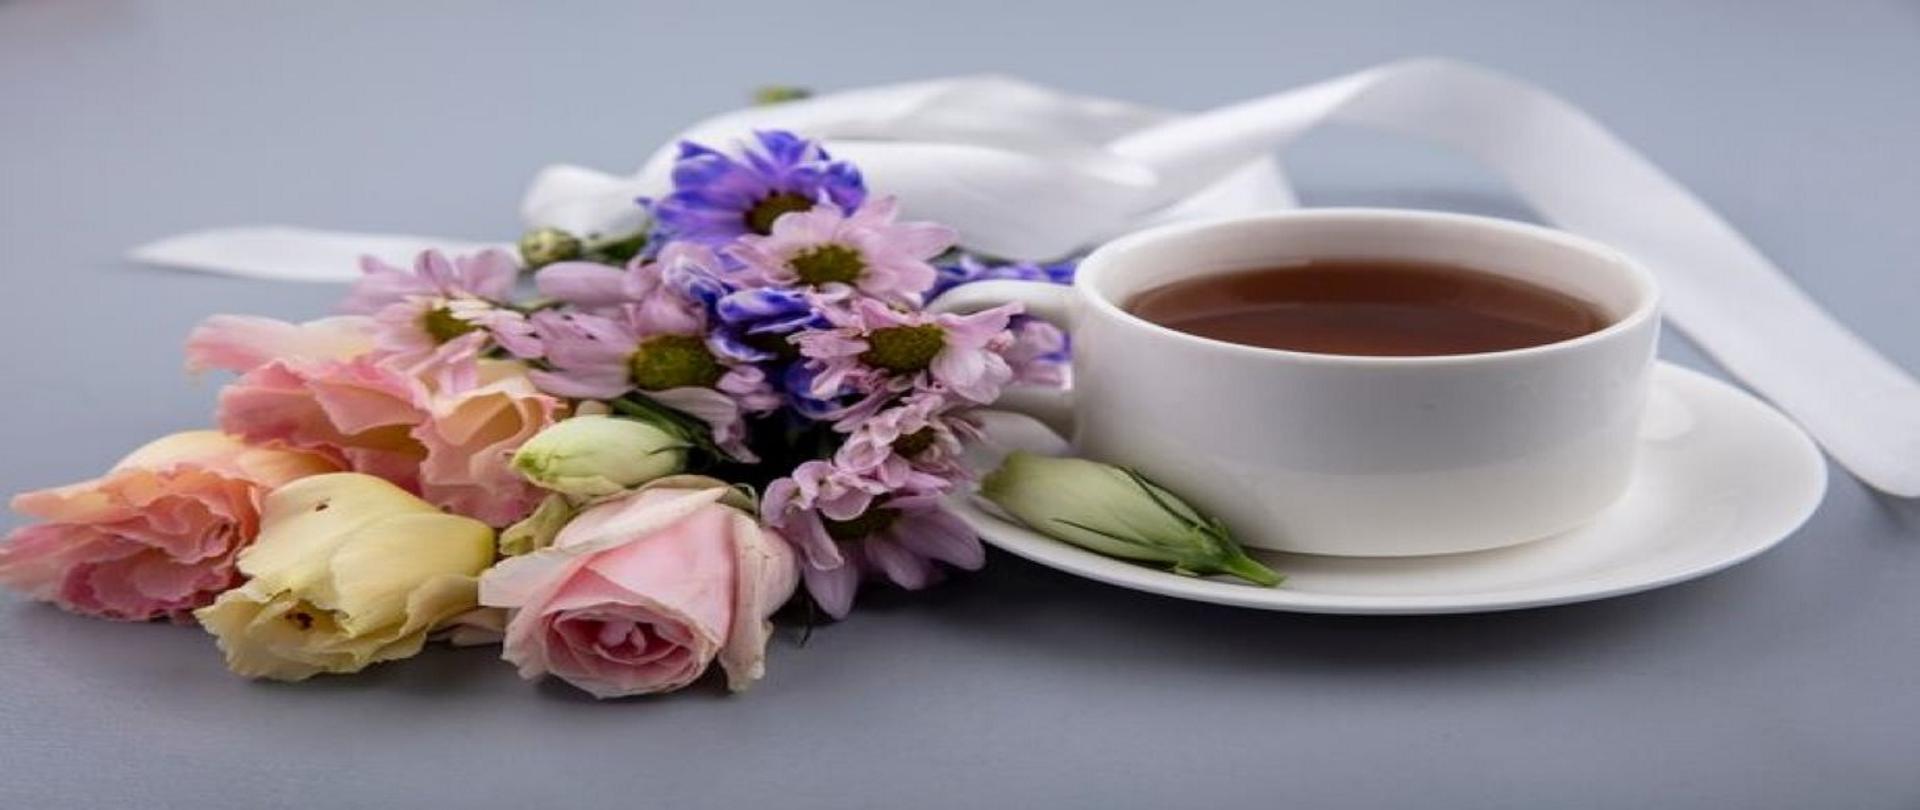 kwiaty, filiżanka z kawą